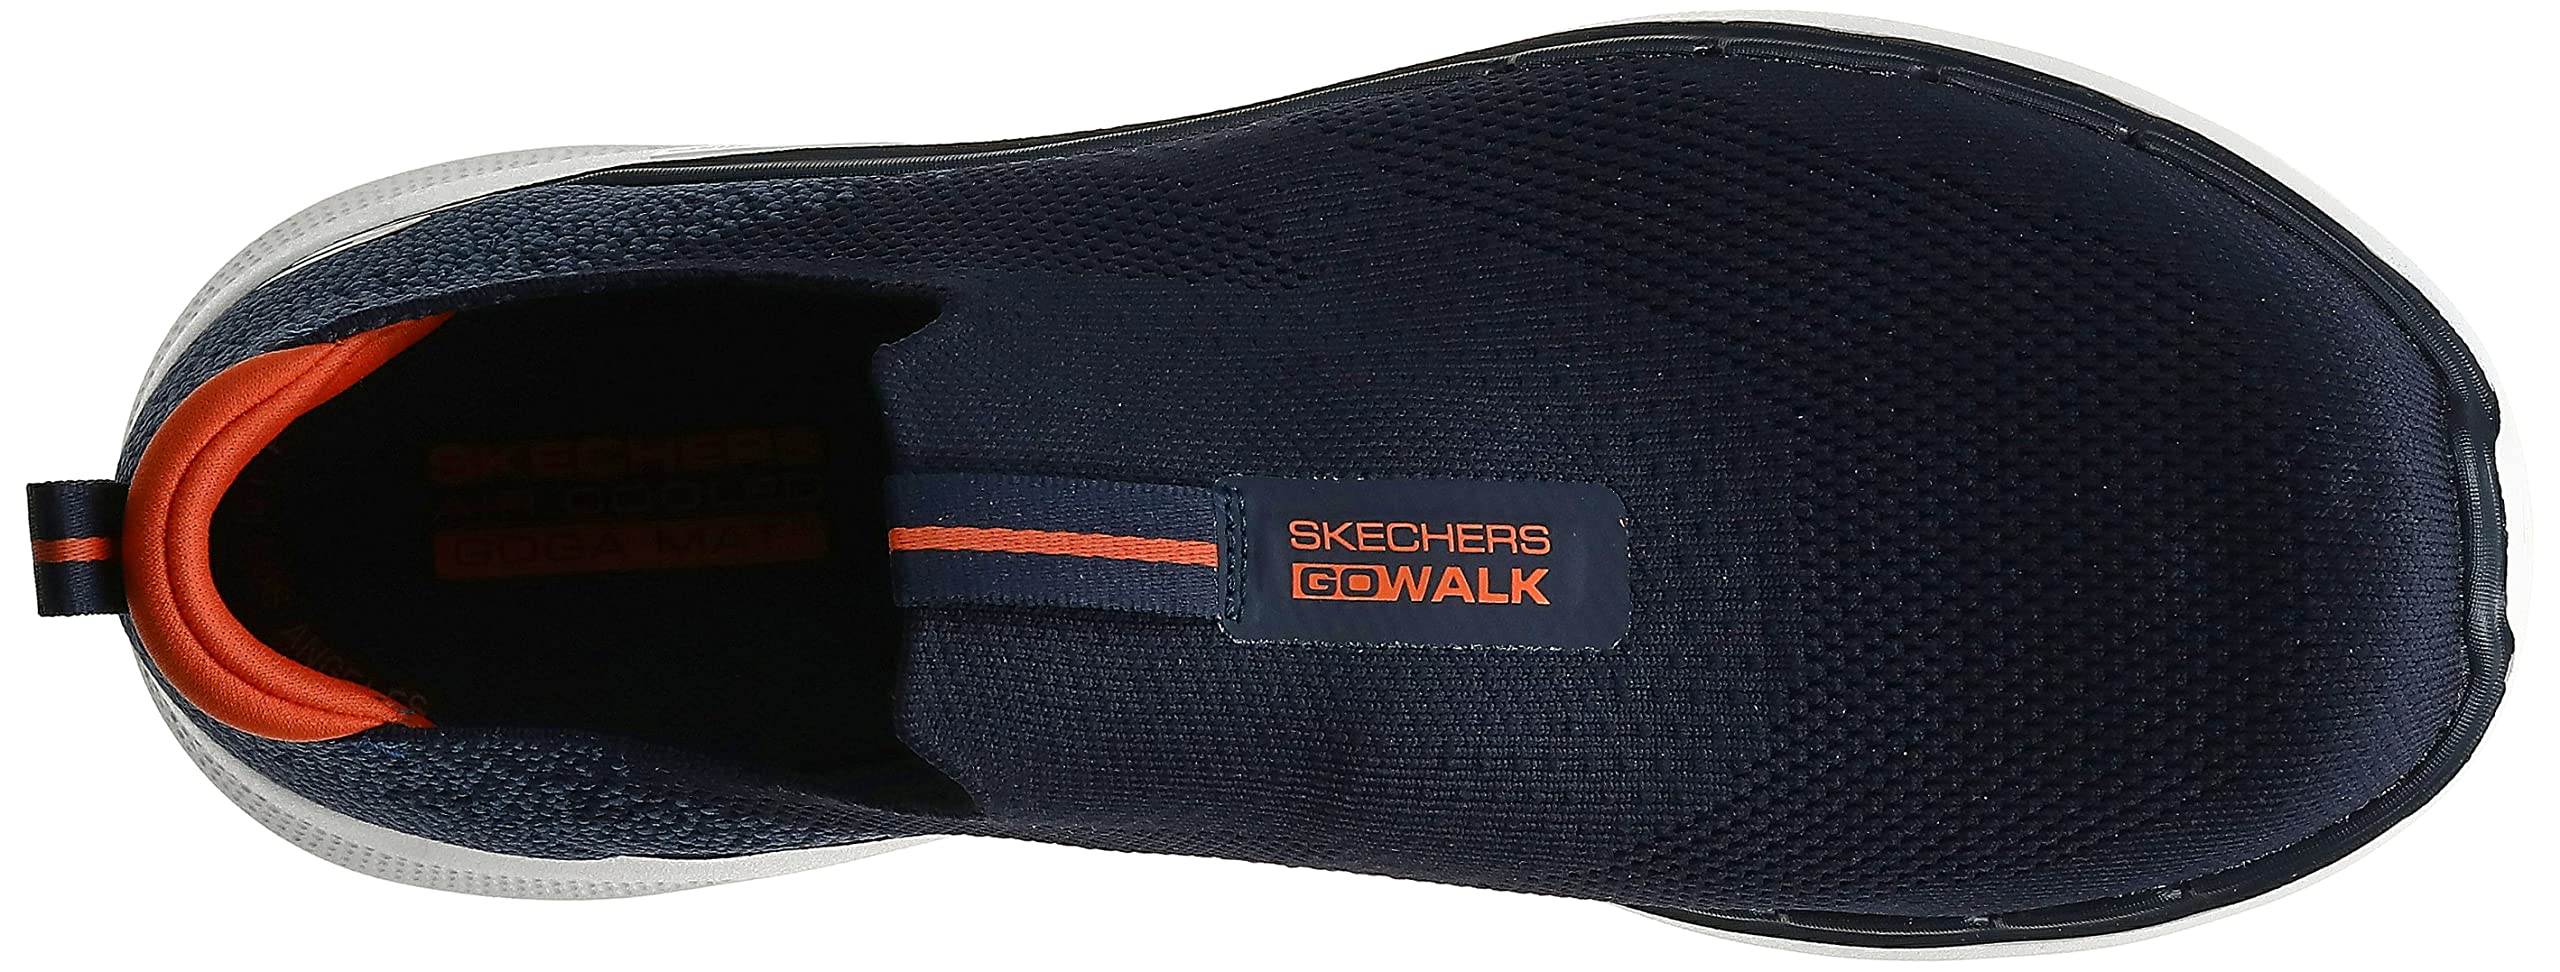 Skechers Men's Gowalk 6-Stretch Fit Slip-on Athletic Performance Walking Shoe